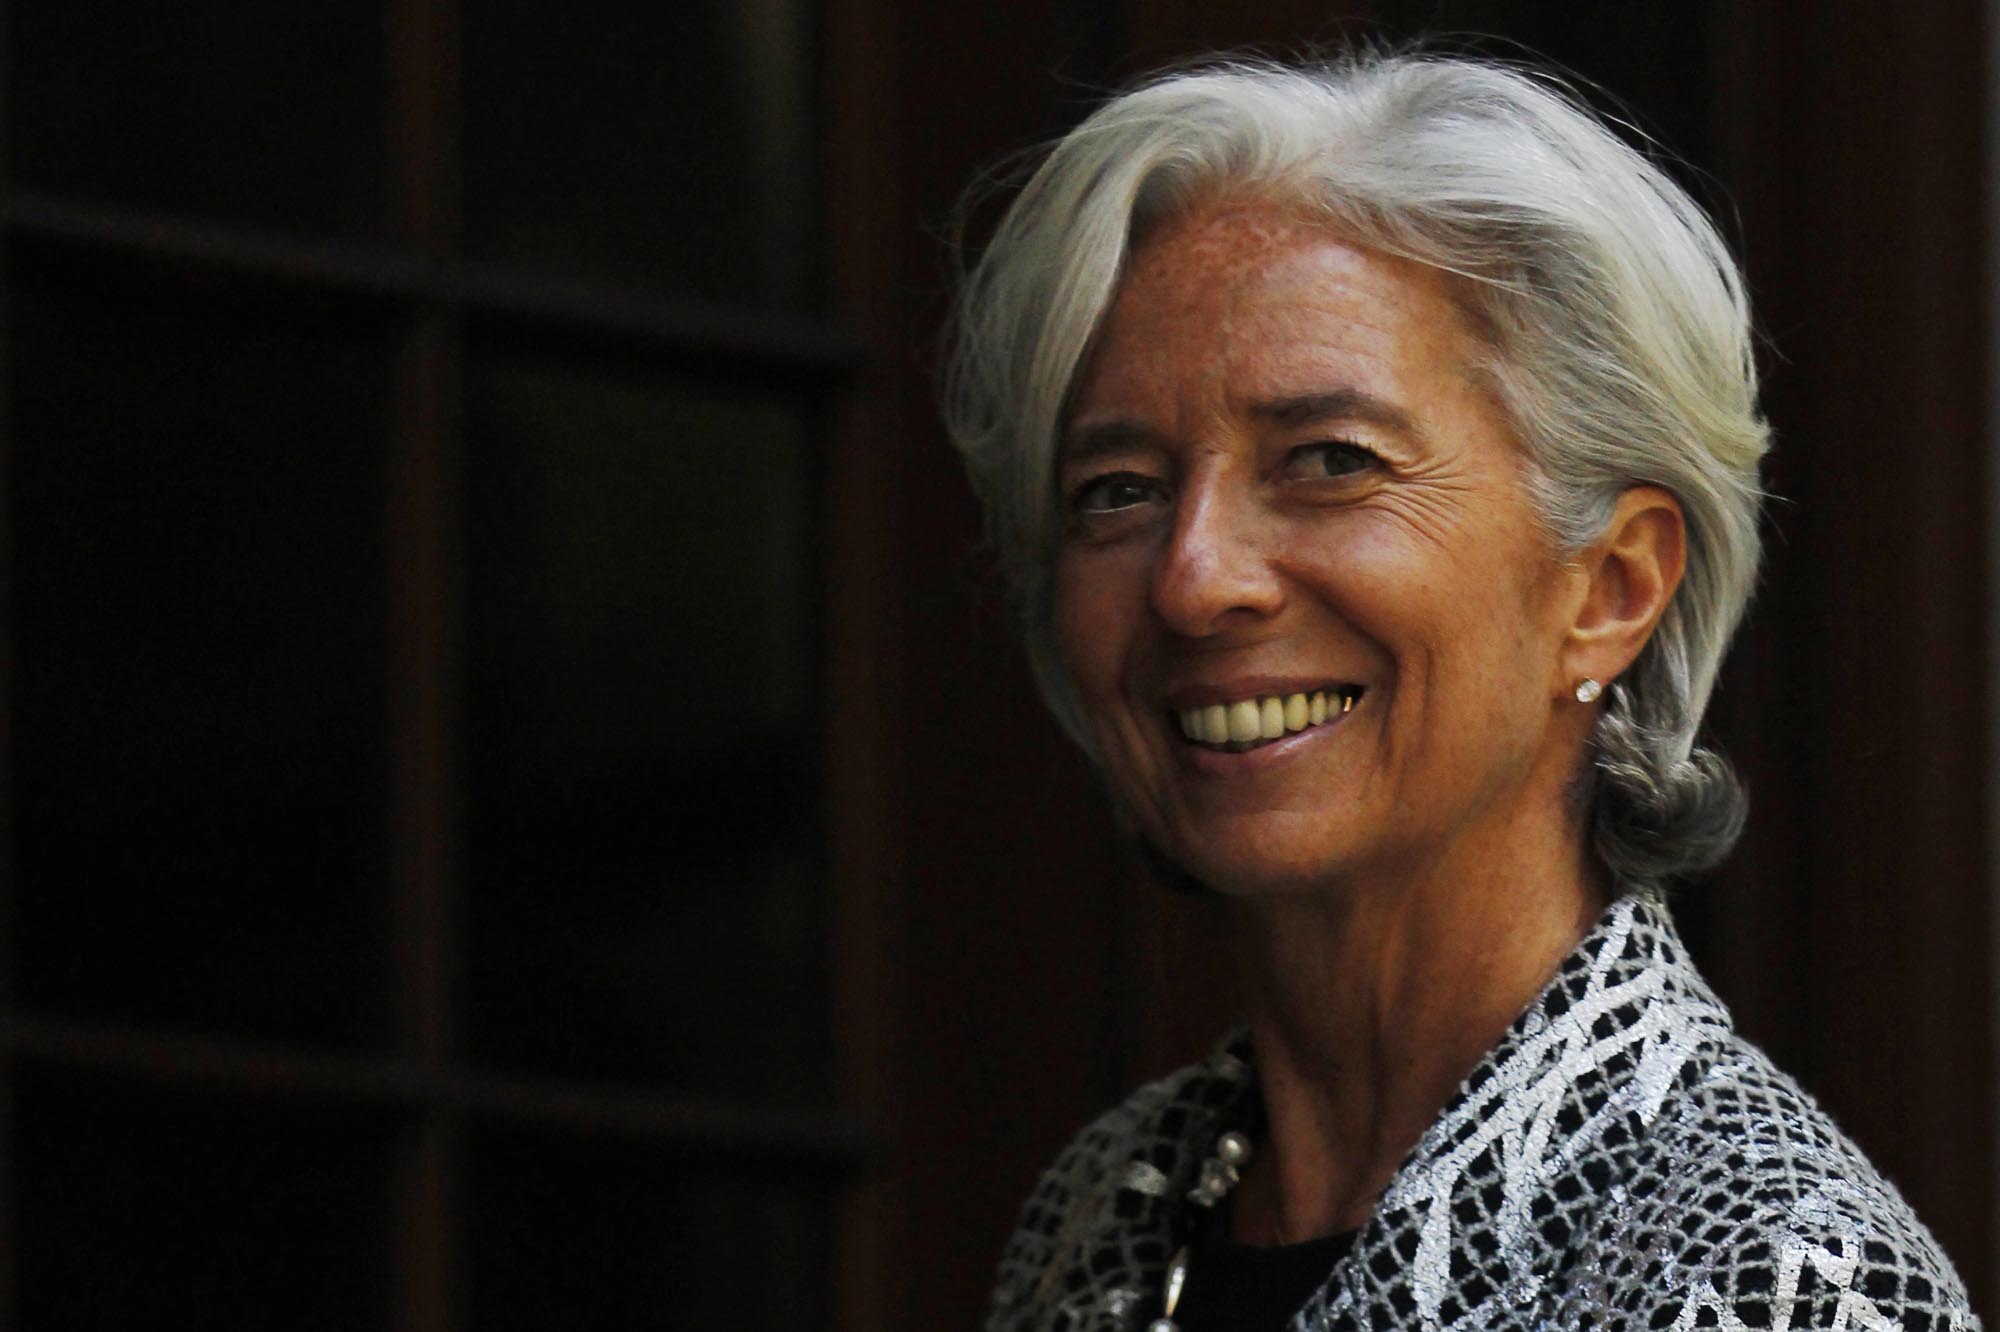 Λαγκάρντ: Δεν θα υπάρξει περίοδος χάριτος για τη δόση στο ΔΝΤ